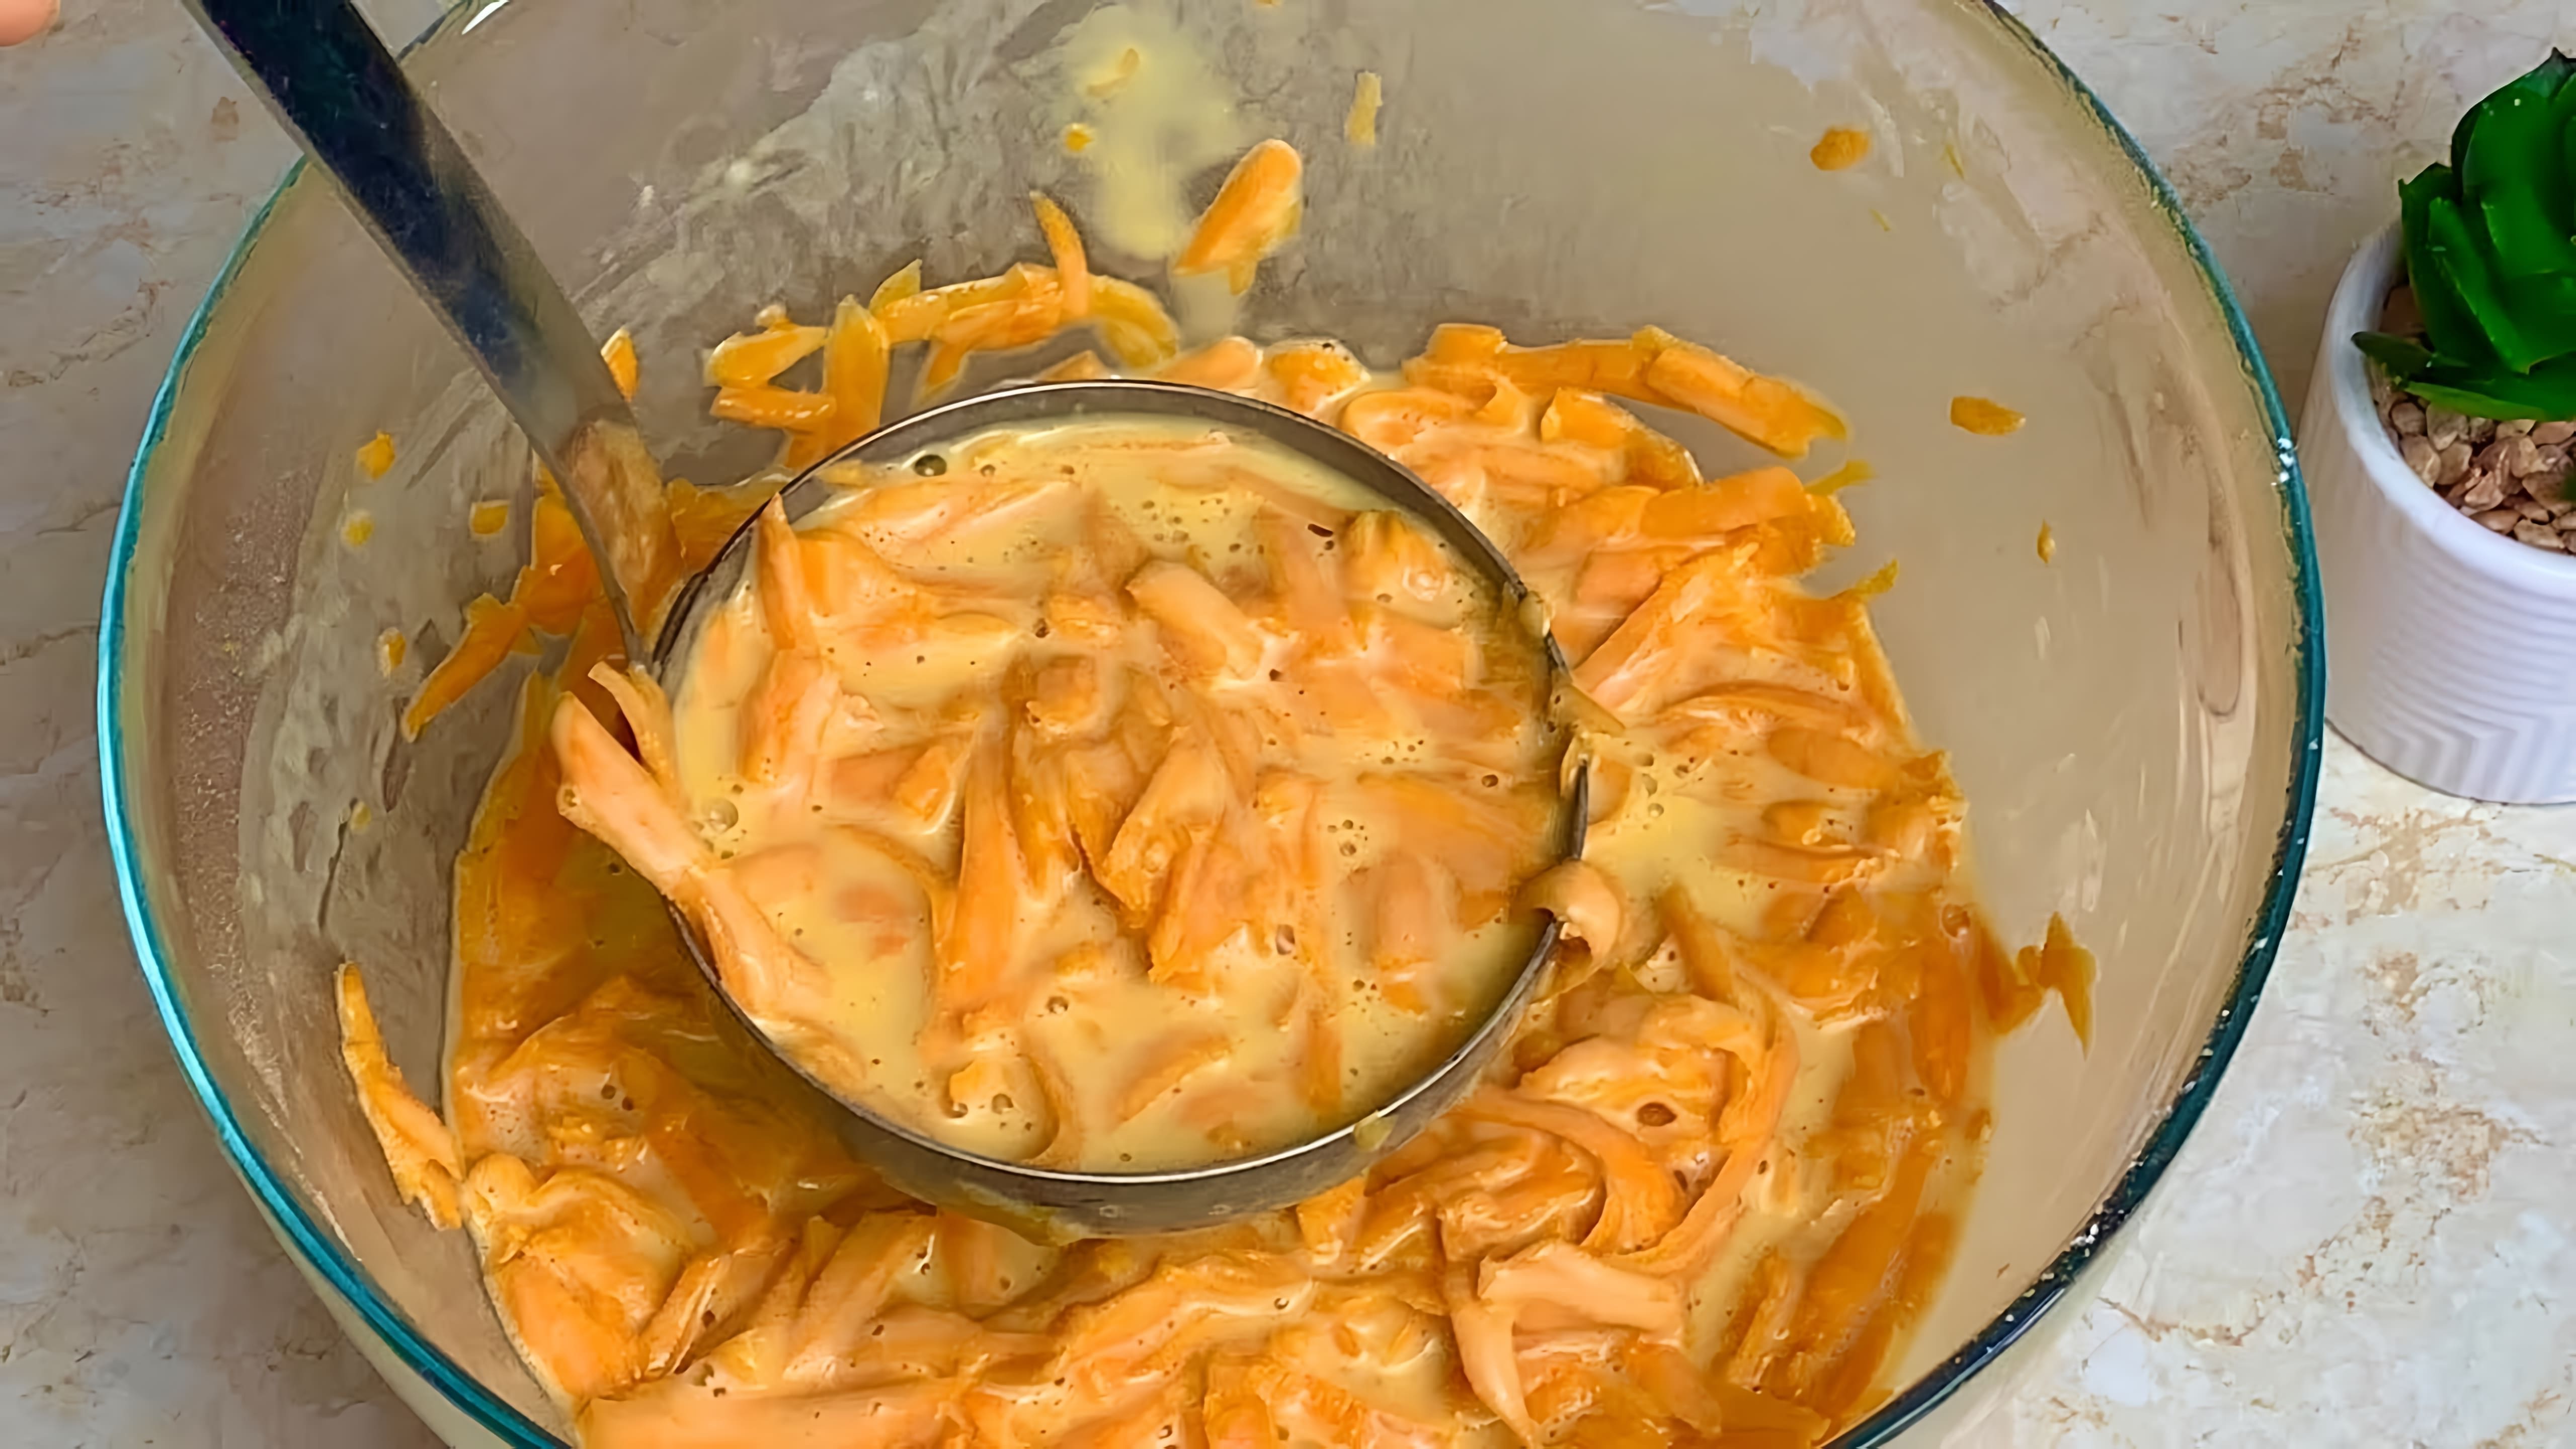 В этом видео демонстрируется рецепт приготовления тыквенных блинов